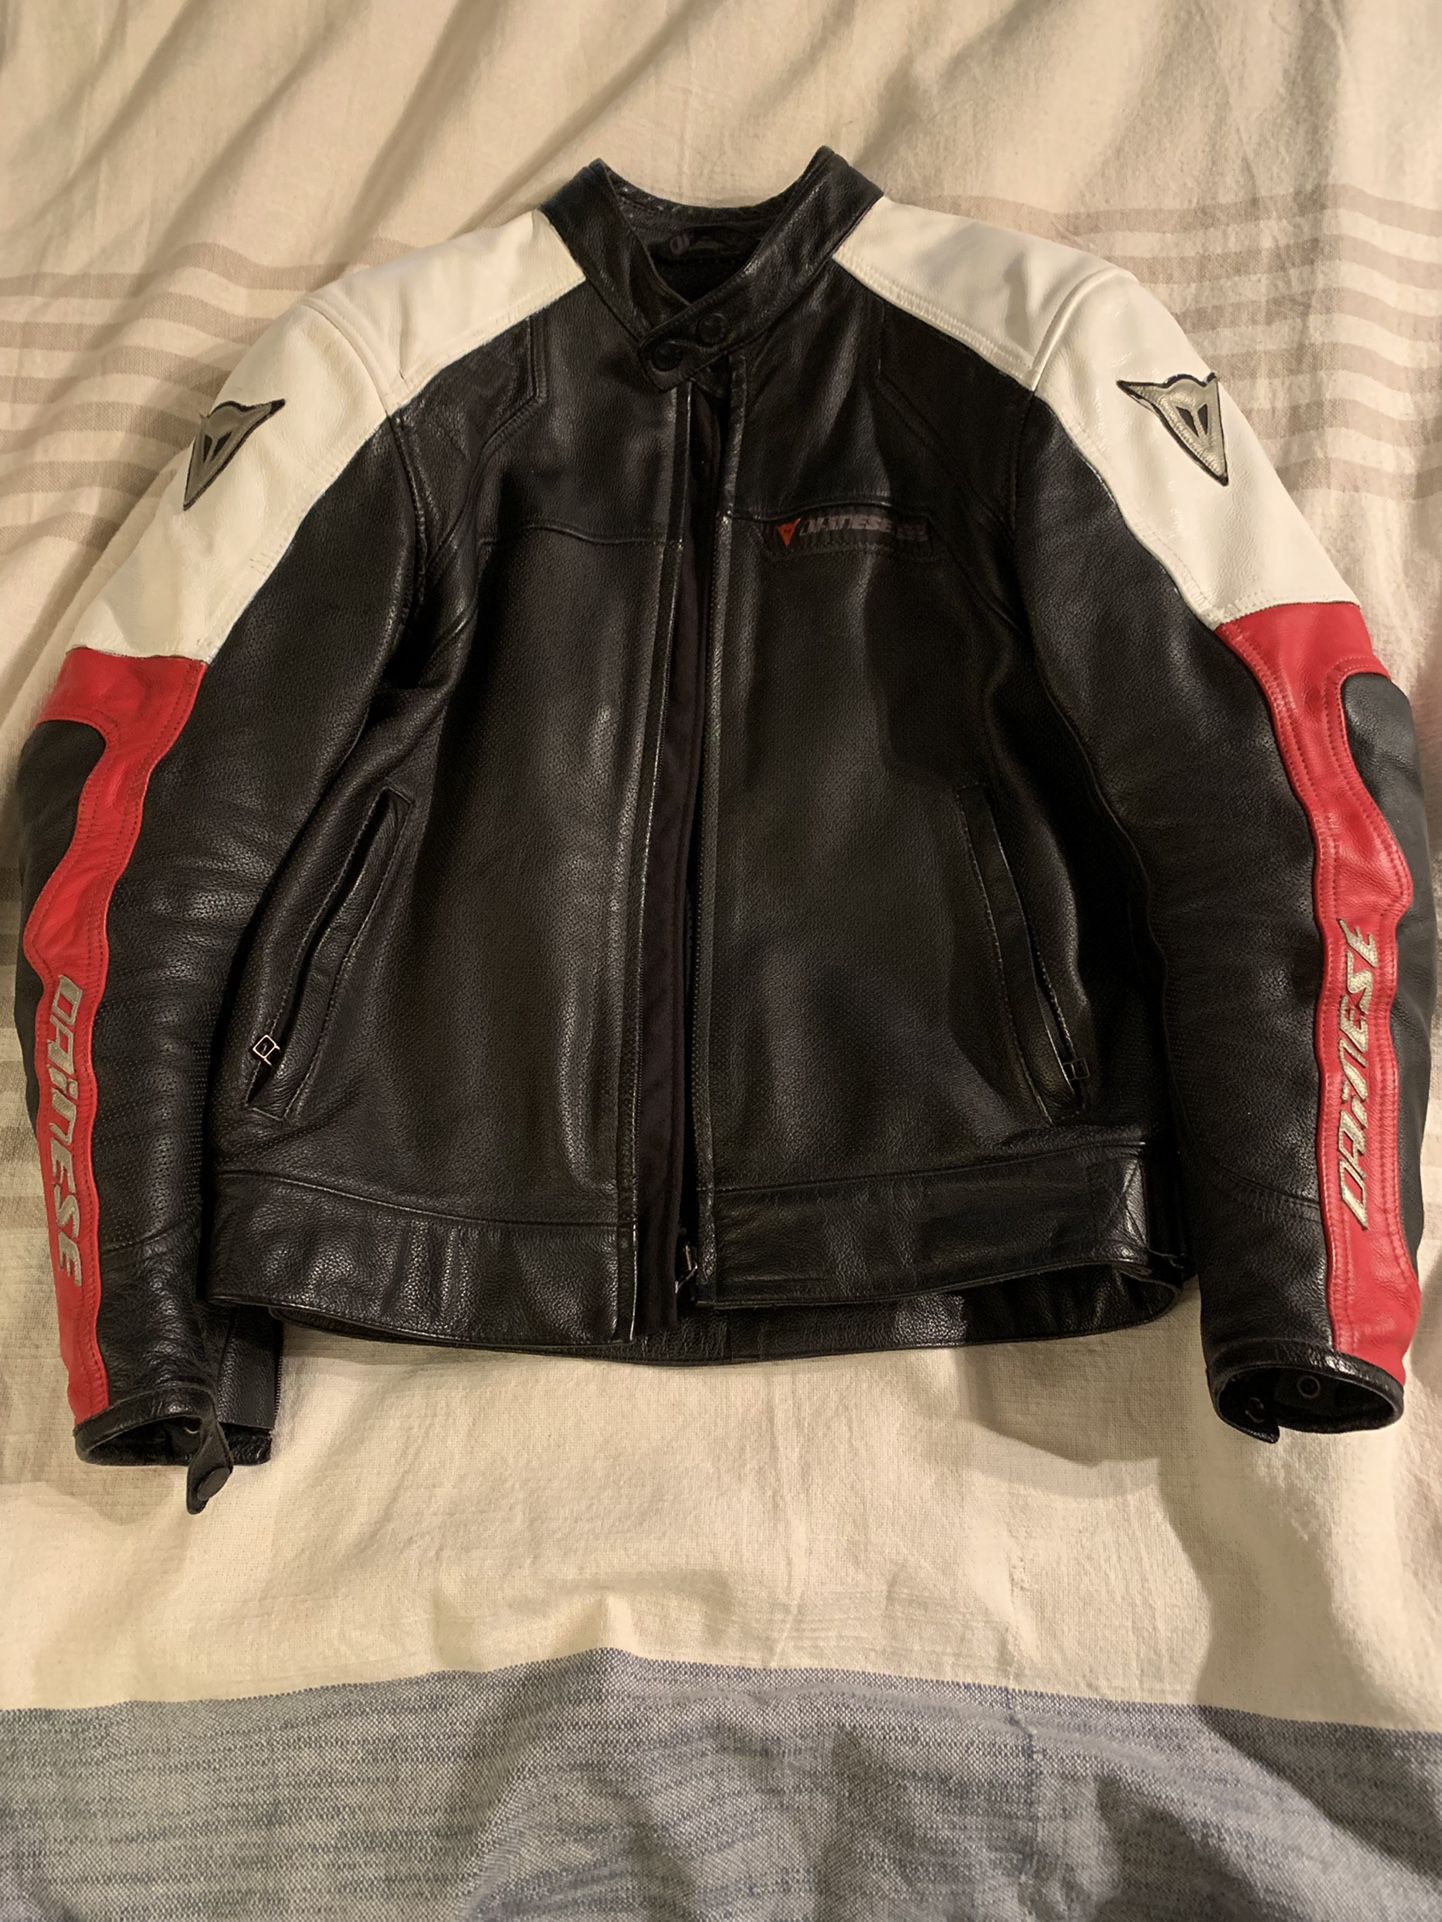 Dainese Leather Motorcycle Jacket custom